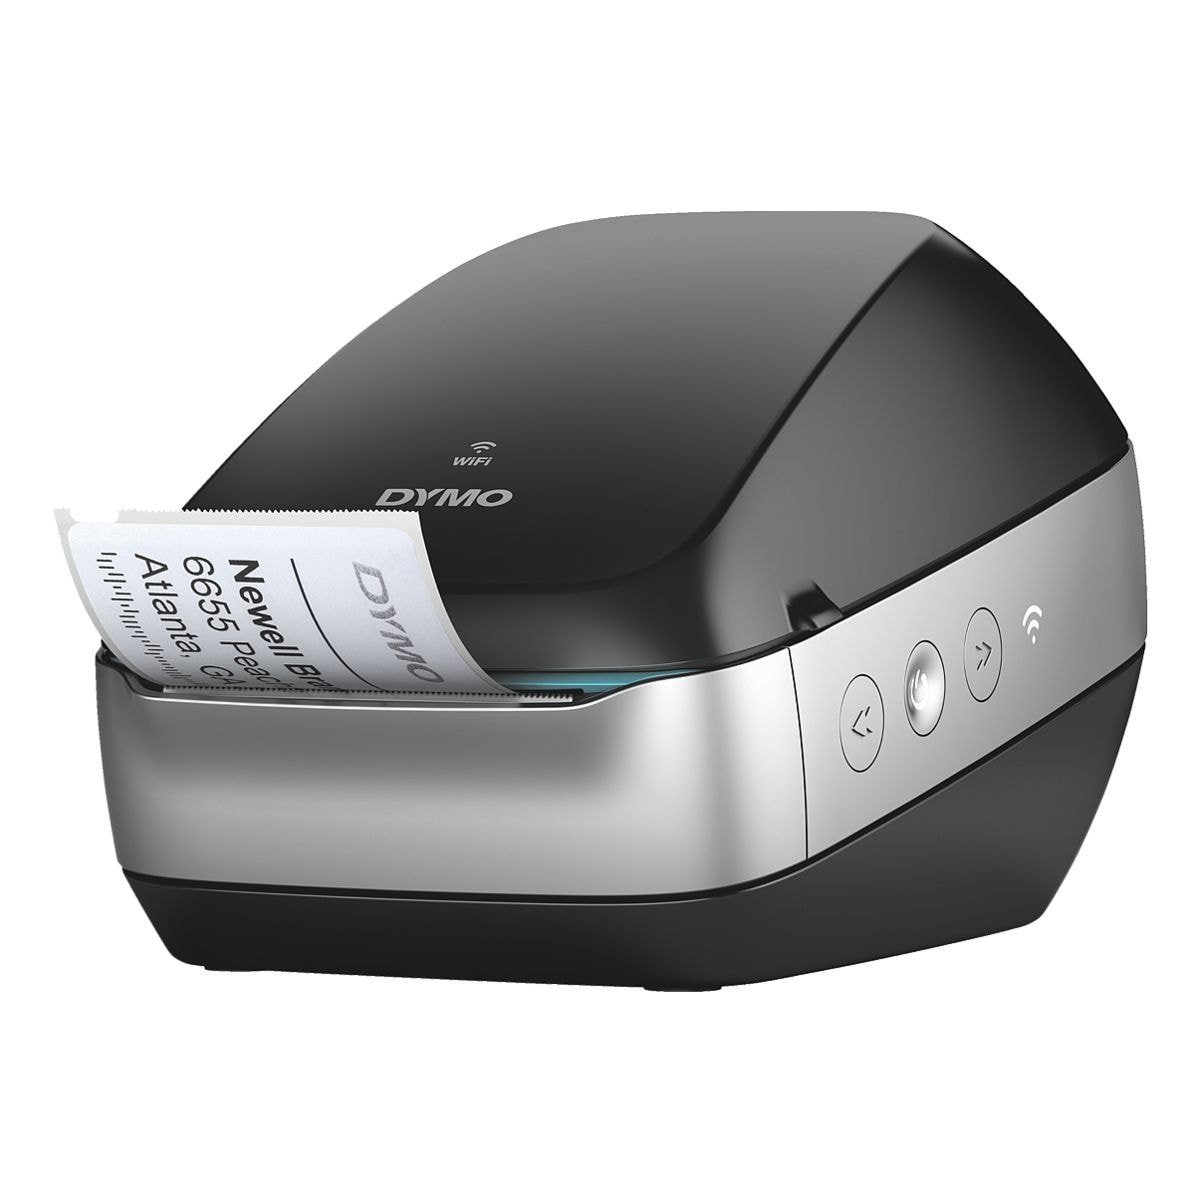 LabelWriter Drucker, (für im Thermo-Direktdruck, Wi-Fi) Etiketten mobiler DYMO Wireless